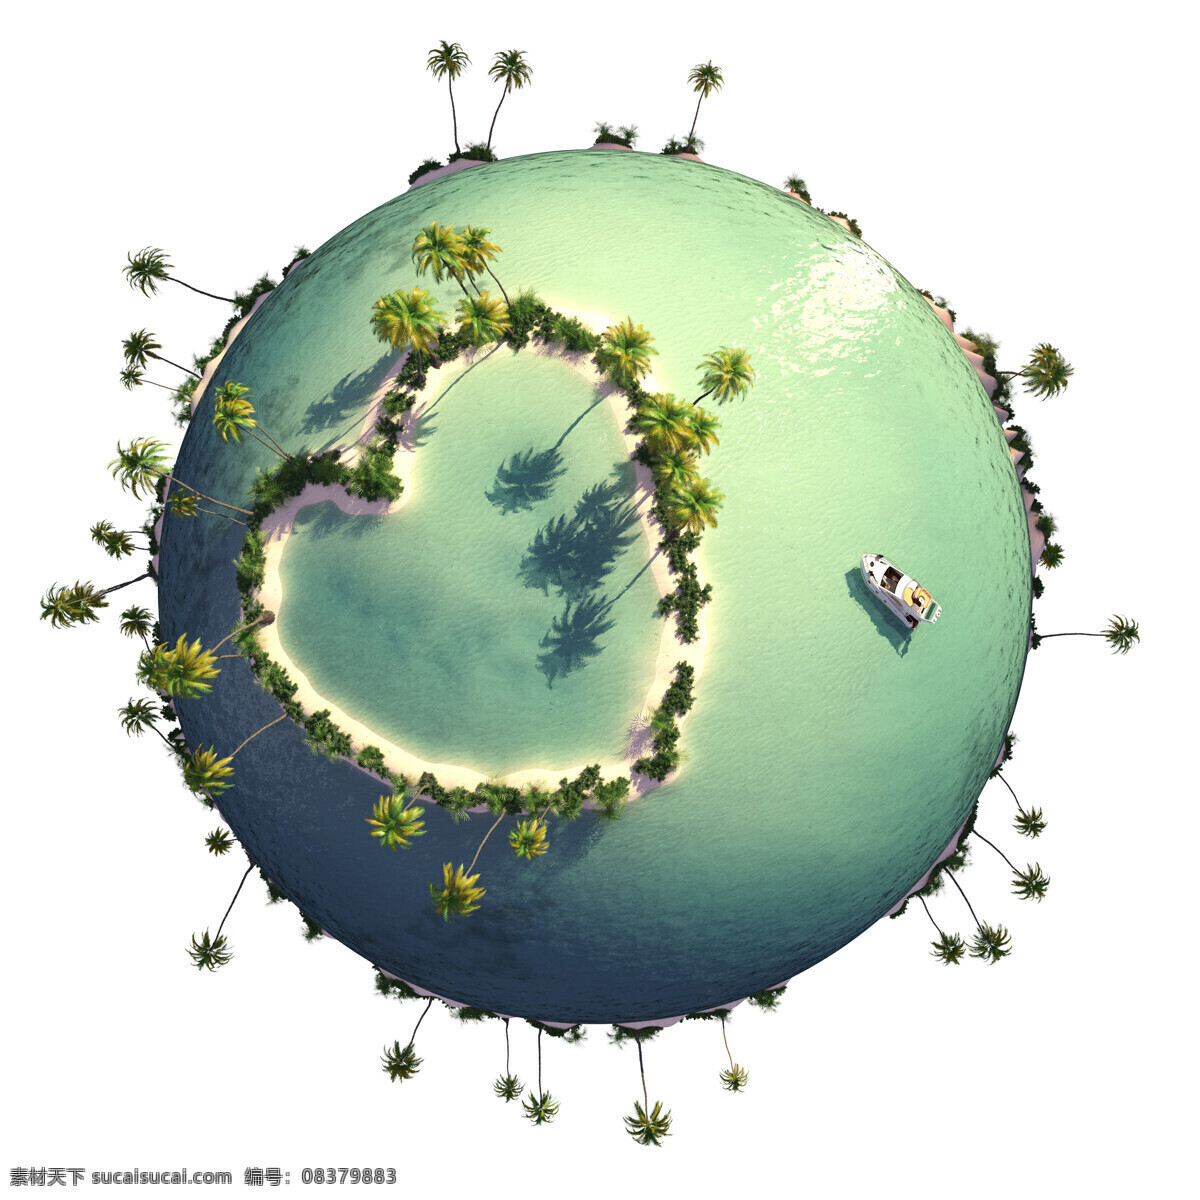 小 星球 上 岛屿 海洋 小星球 树木 船 其他类别 生活百科 白色